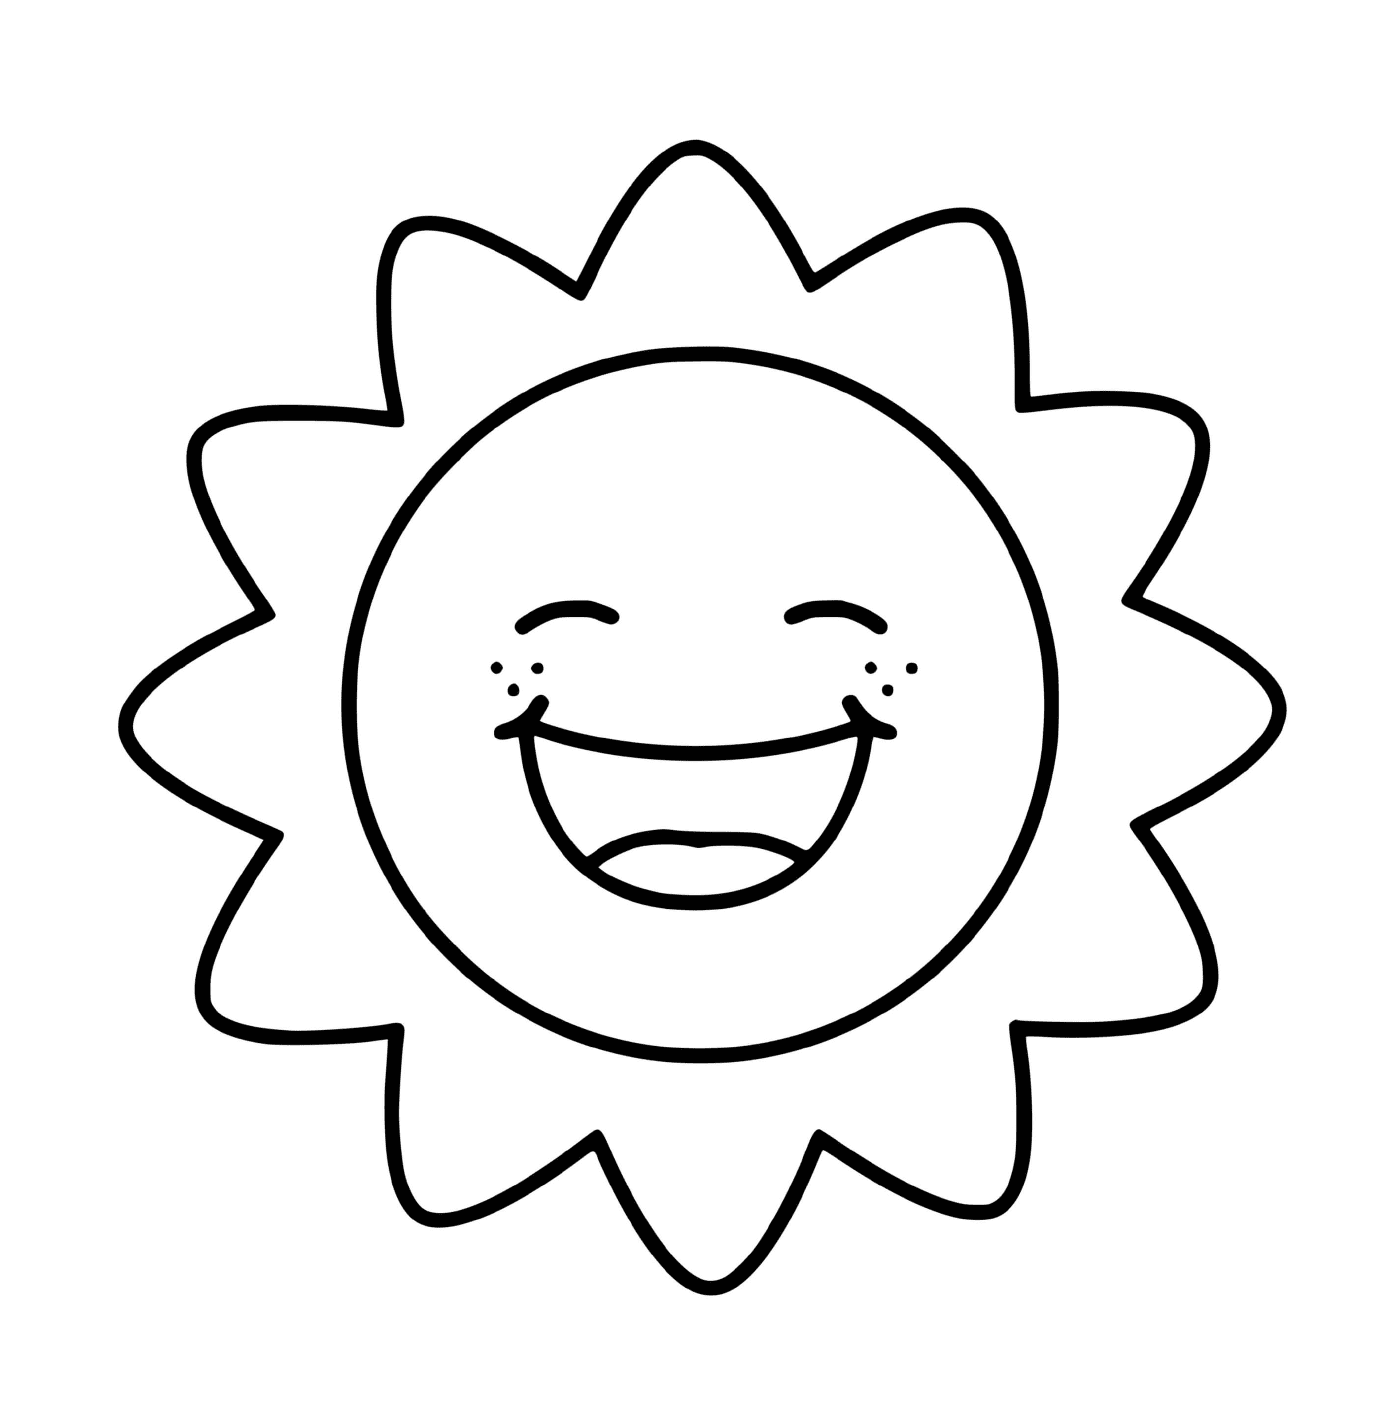  Sunshine kawaii smiling 